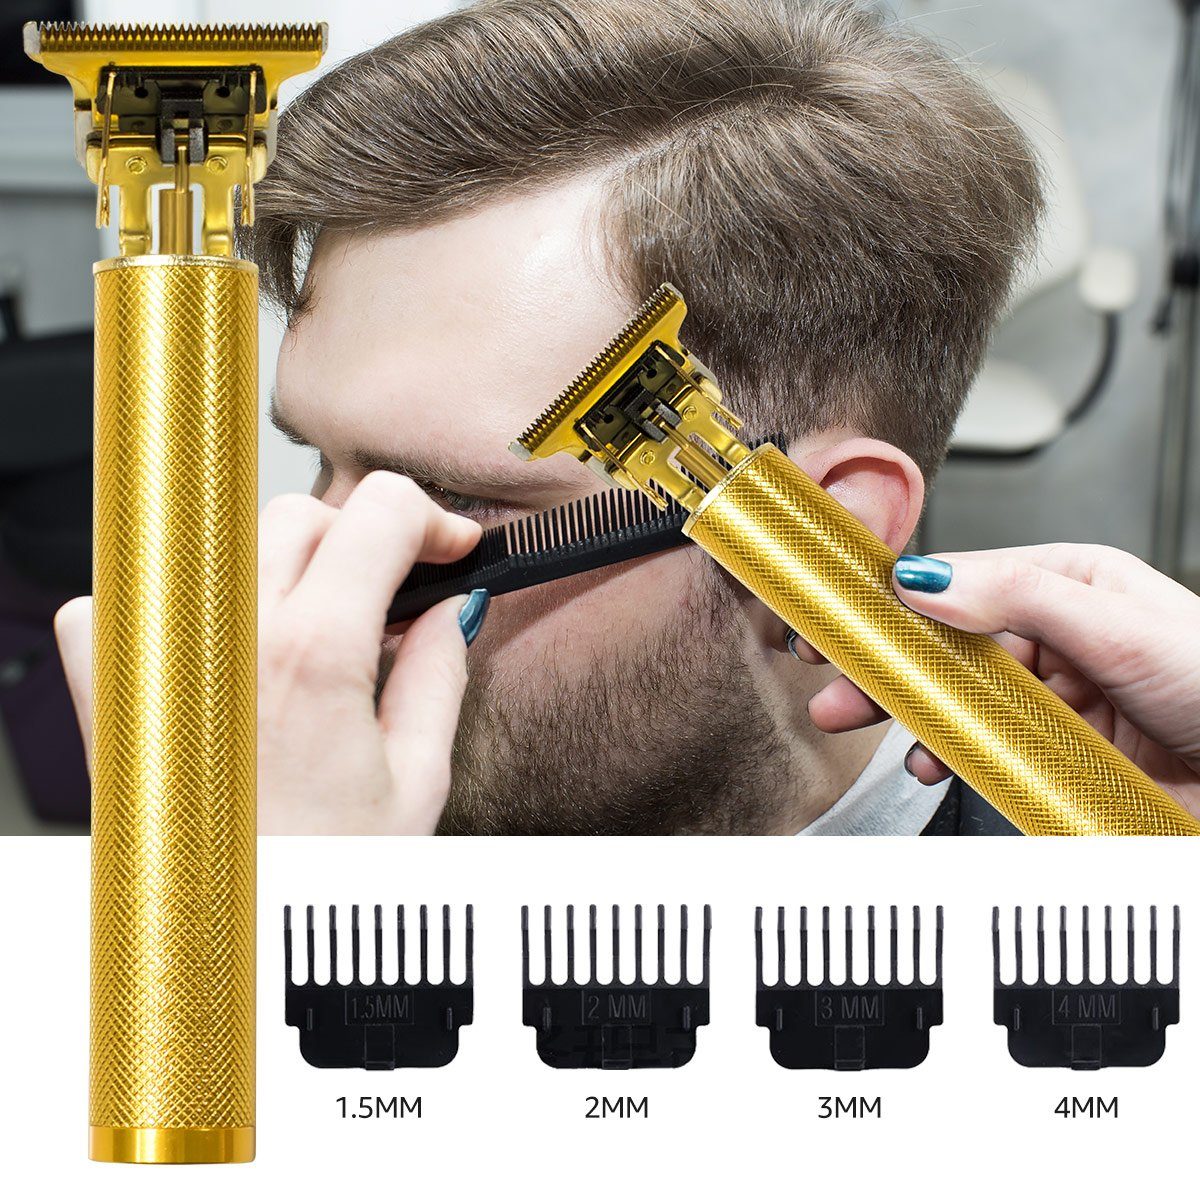 LifeImpree Haarschneider Haarschneider Haarschneidemaschine Profi, Kabelloser Präzisionstrimmer, T-Blatt Trimmer für Männer und Friseure, Wasserdicht,Wiederaufladbarer